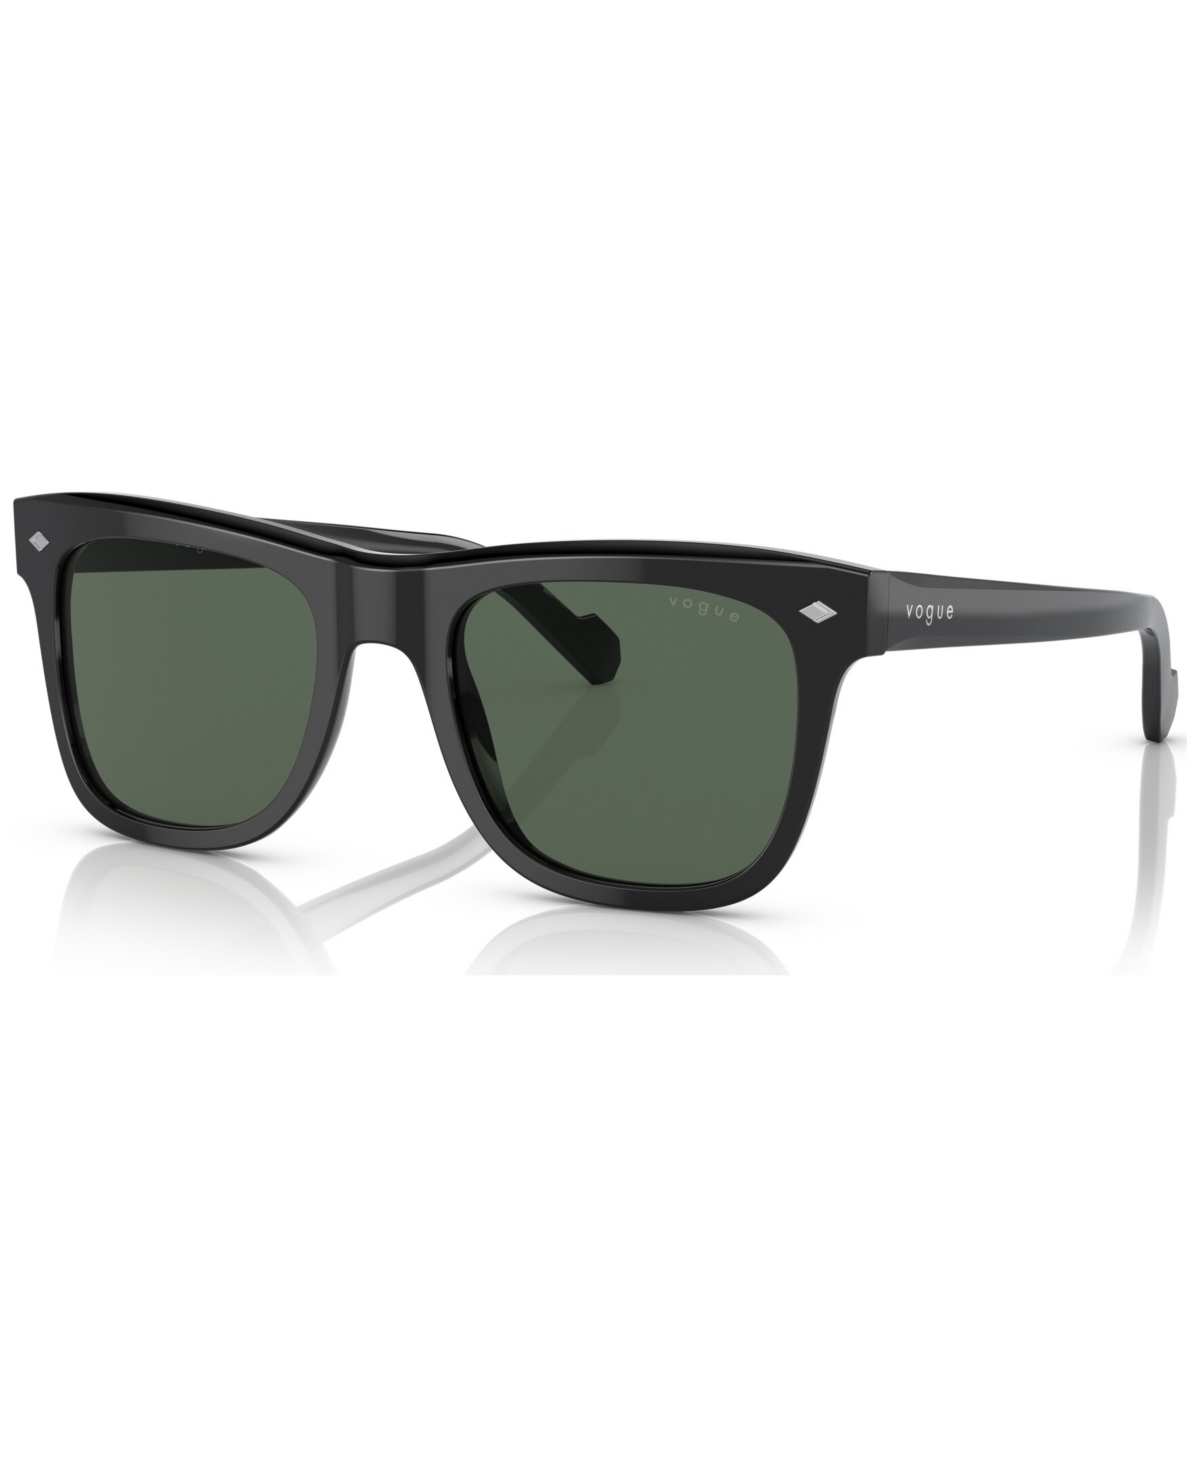 Men's Sunglasses, VO5465S51-x - Black